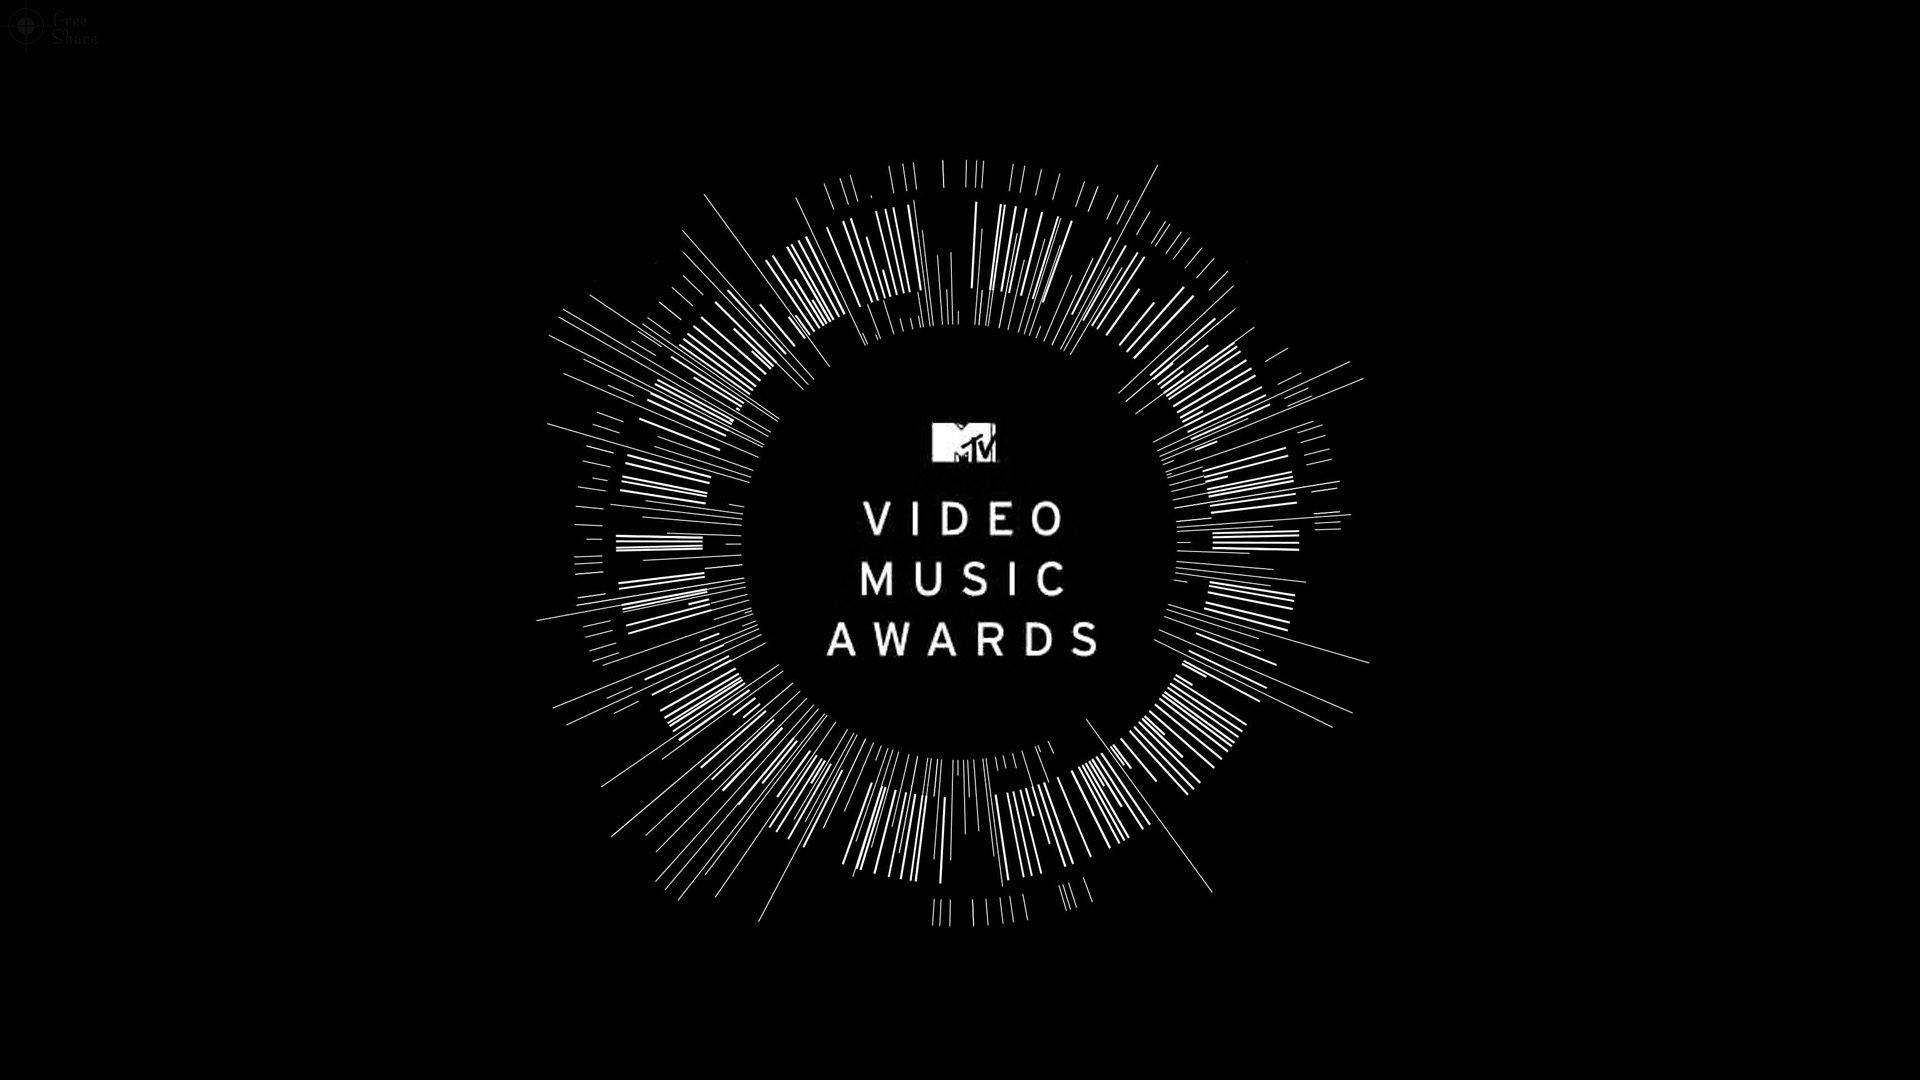 LLEGA OTRA EDICIÓN: MTV VIDEO MUSIC AWARDS